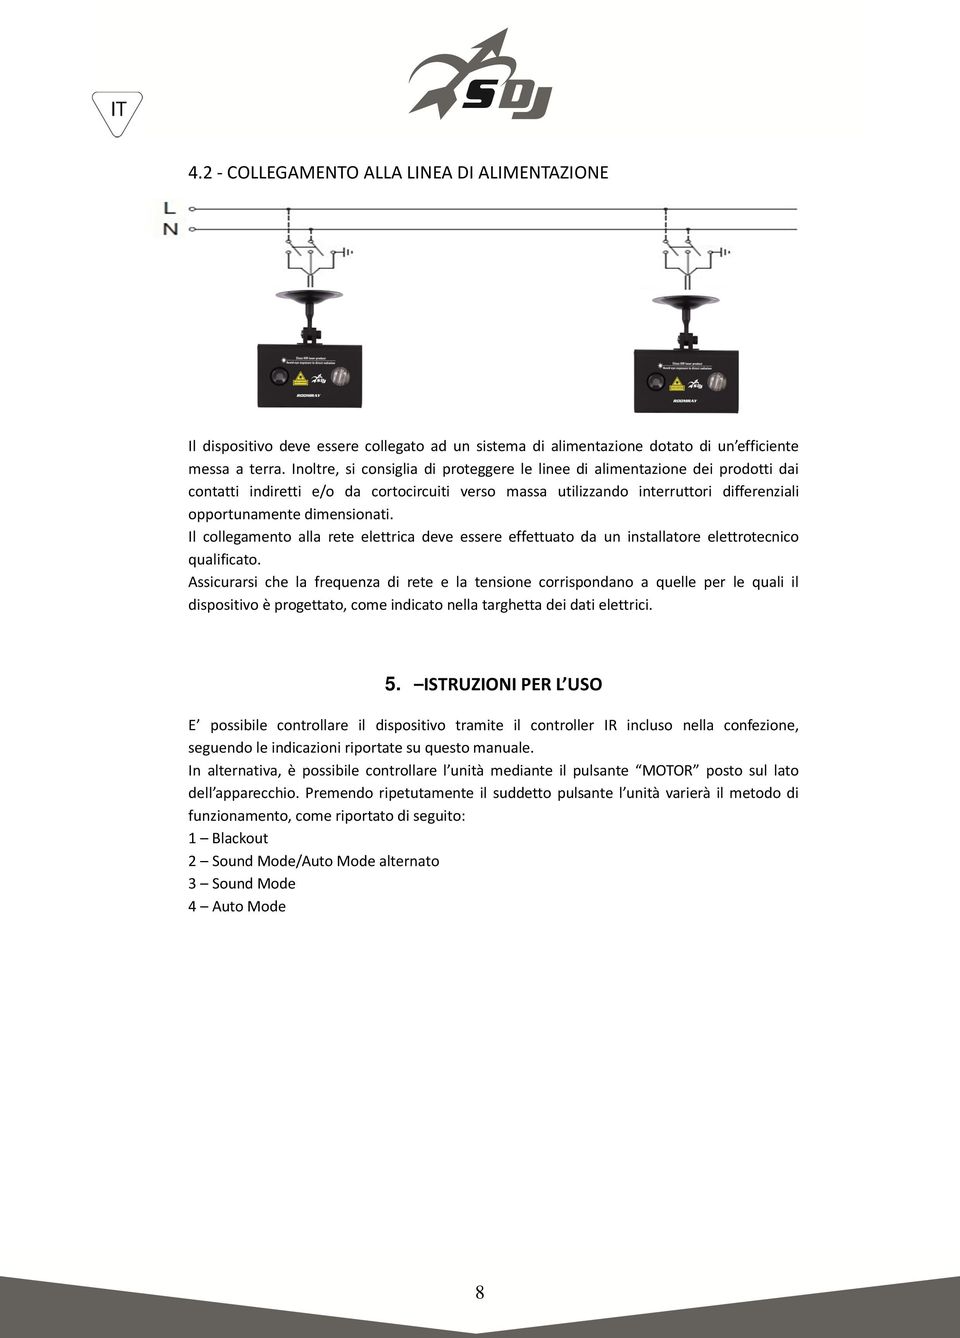 Il collegamento alla rete elettrica deve essere effettuato da un installatore elettrotecnico qualificato.